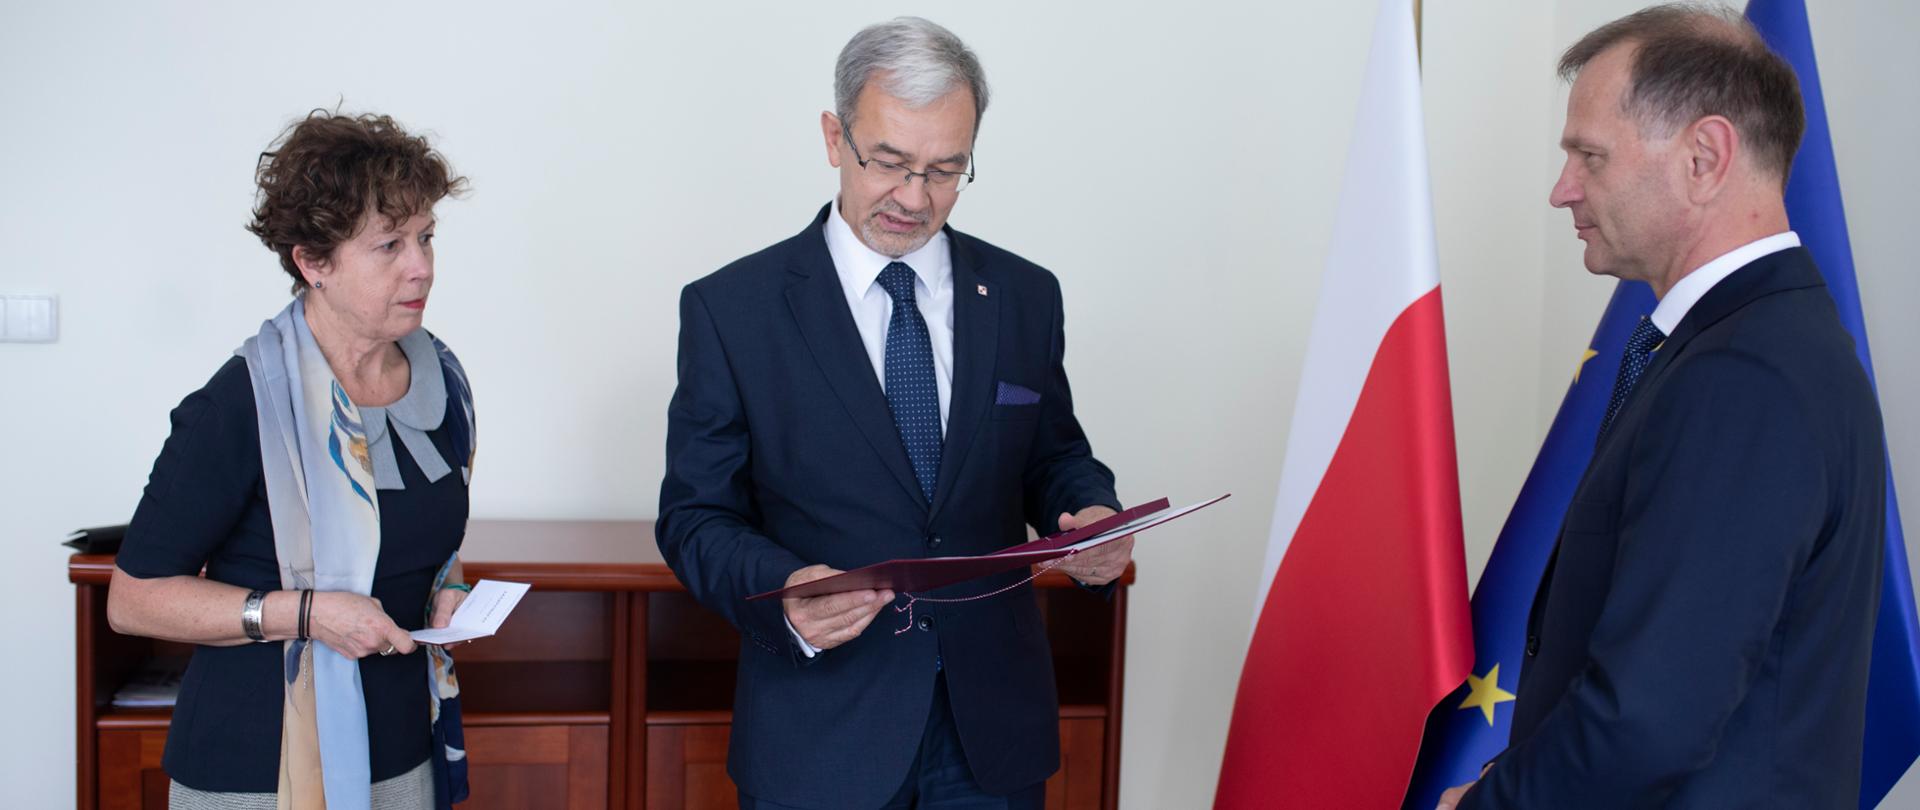 minister Jerzy Kwieciński odczytuje postanowienia o nadaniu Medalu 100-lecia Odzyskania Niepodległości, przed nim stoi uhonorowany, na zdjęciu widać też flagi polską i unijną i osobę, która podaje legitymację do odznaczenia